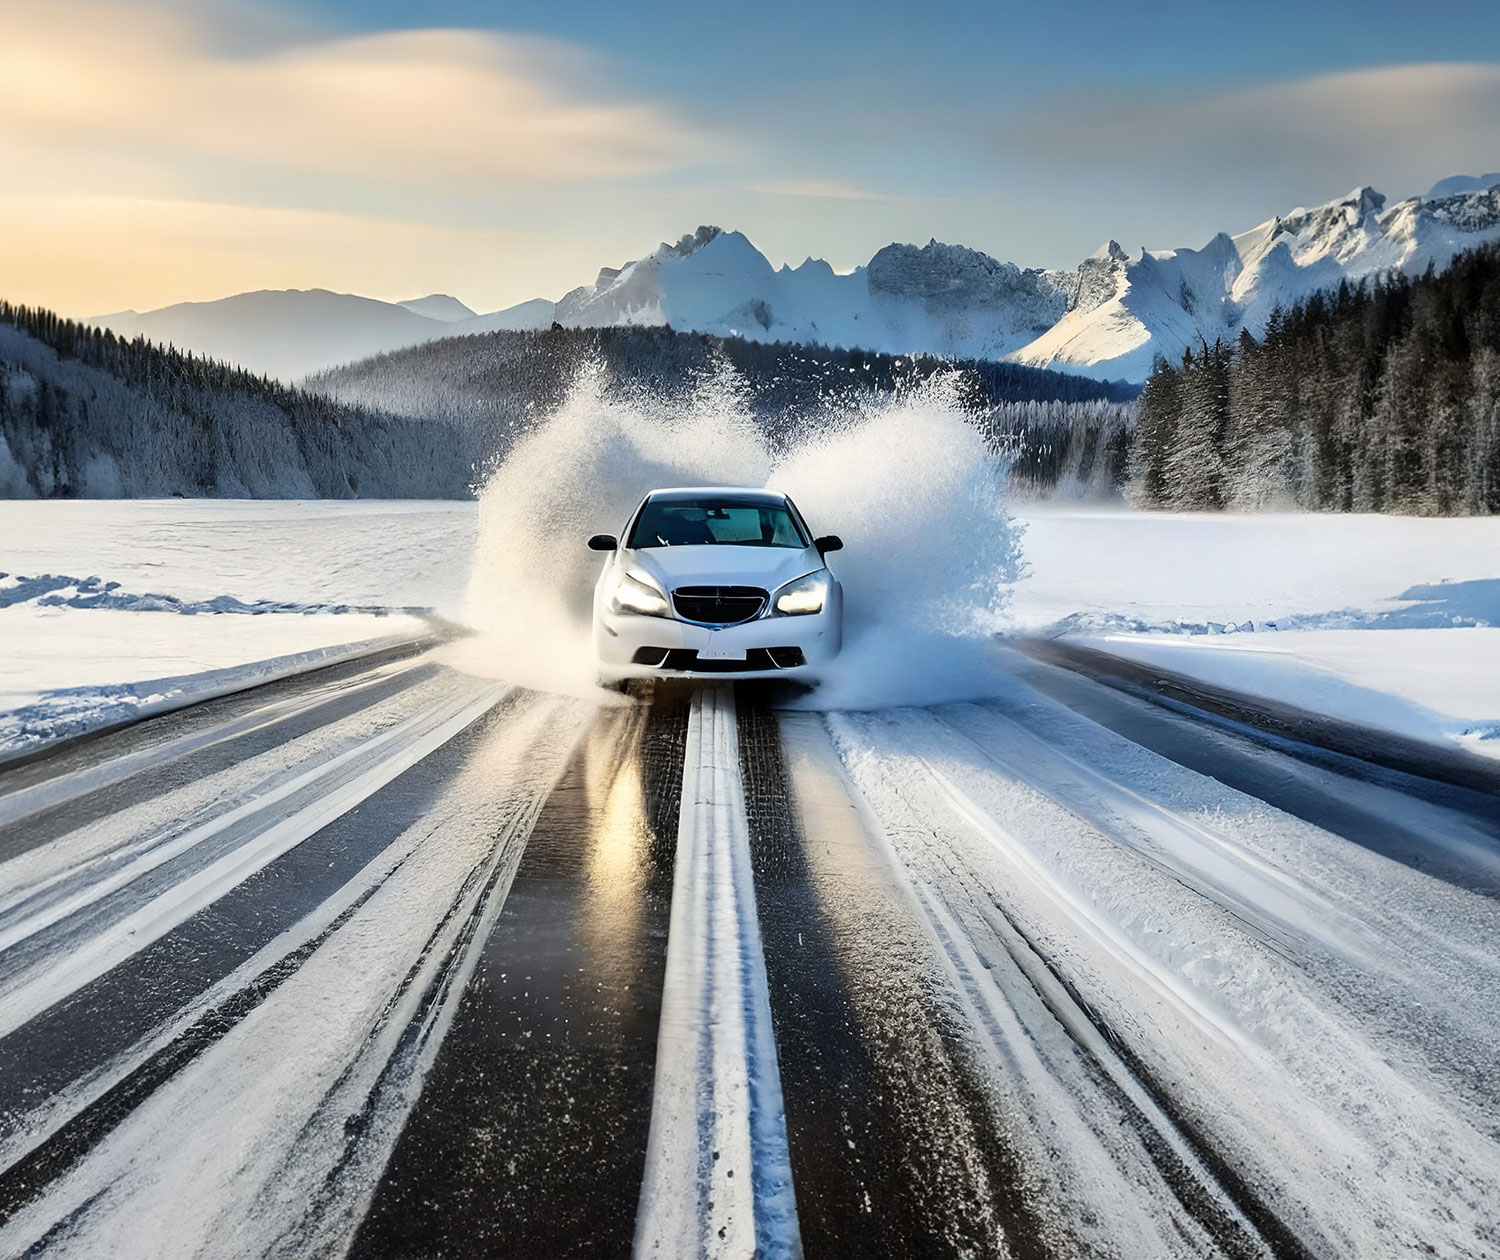 Darum sollte man den Schnee vor Fahrtantritt vom Auto entfernen